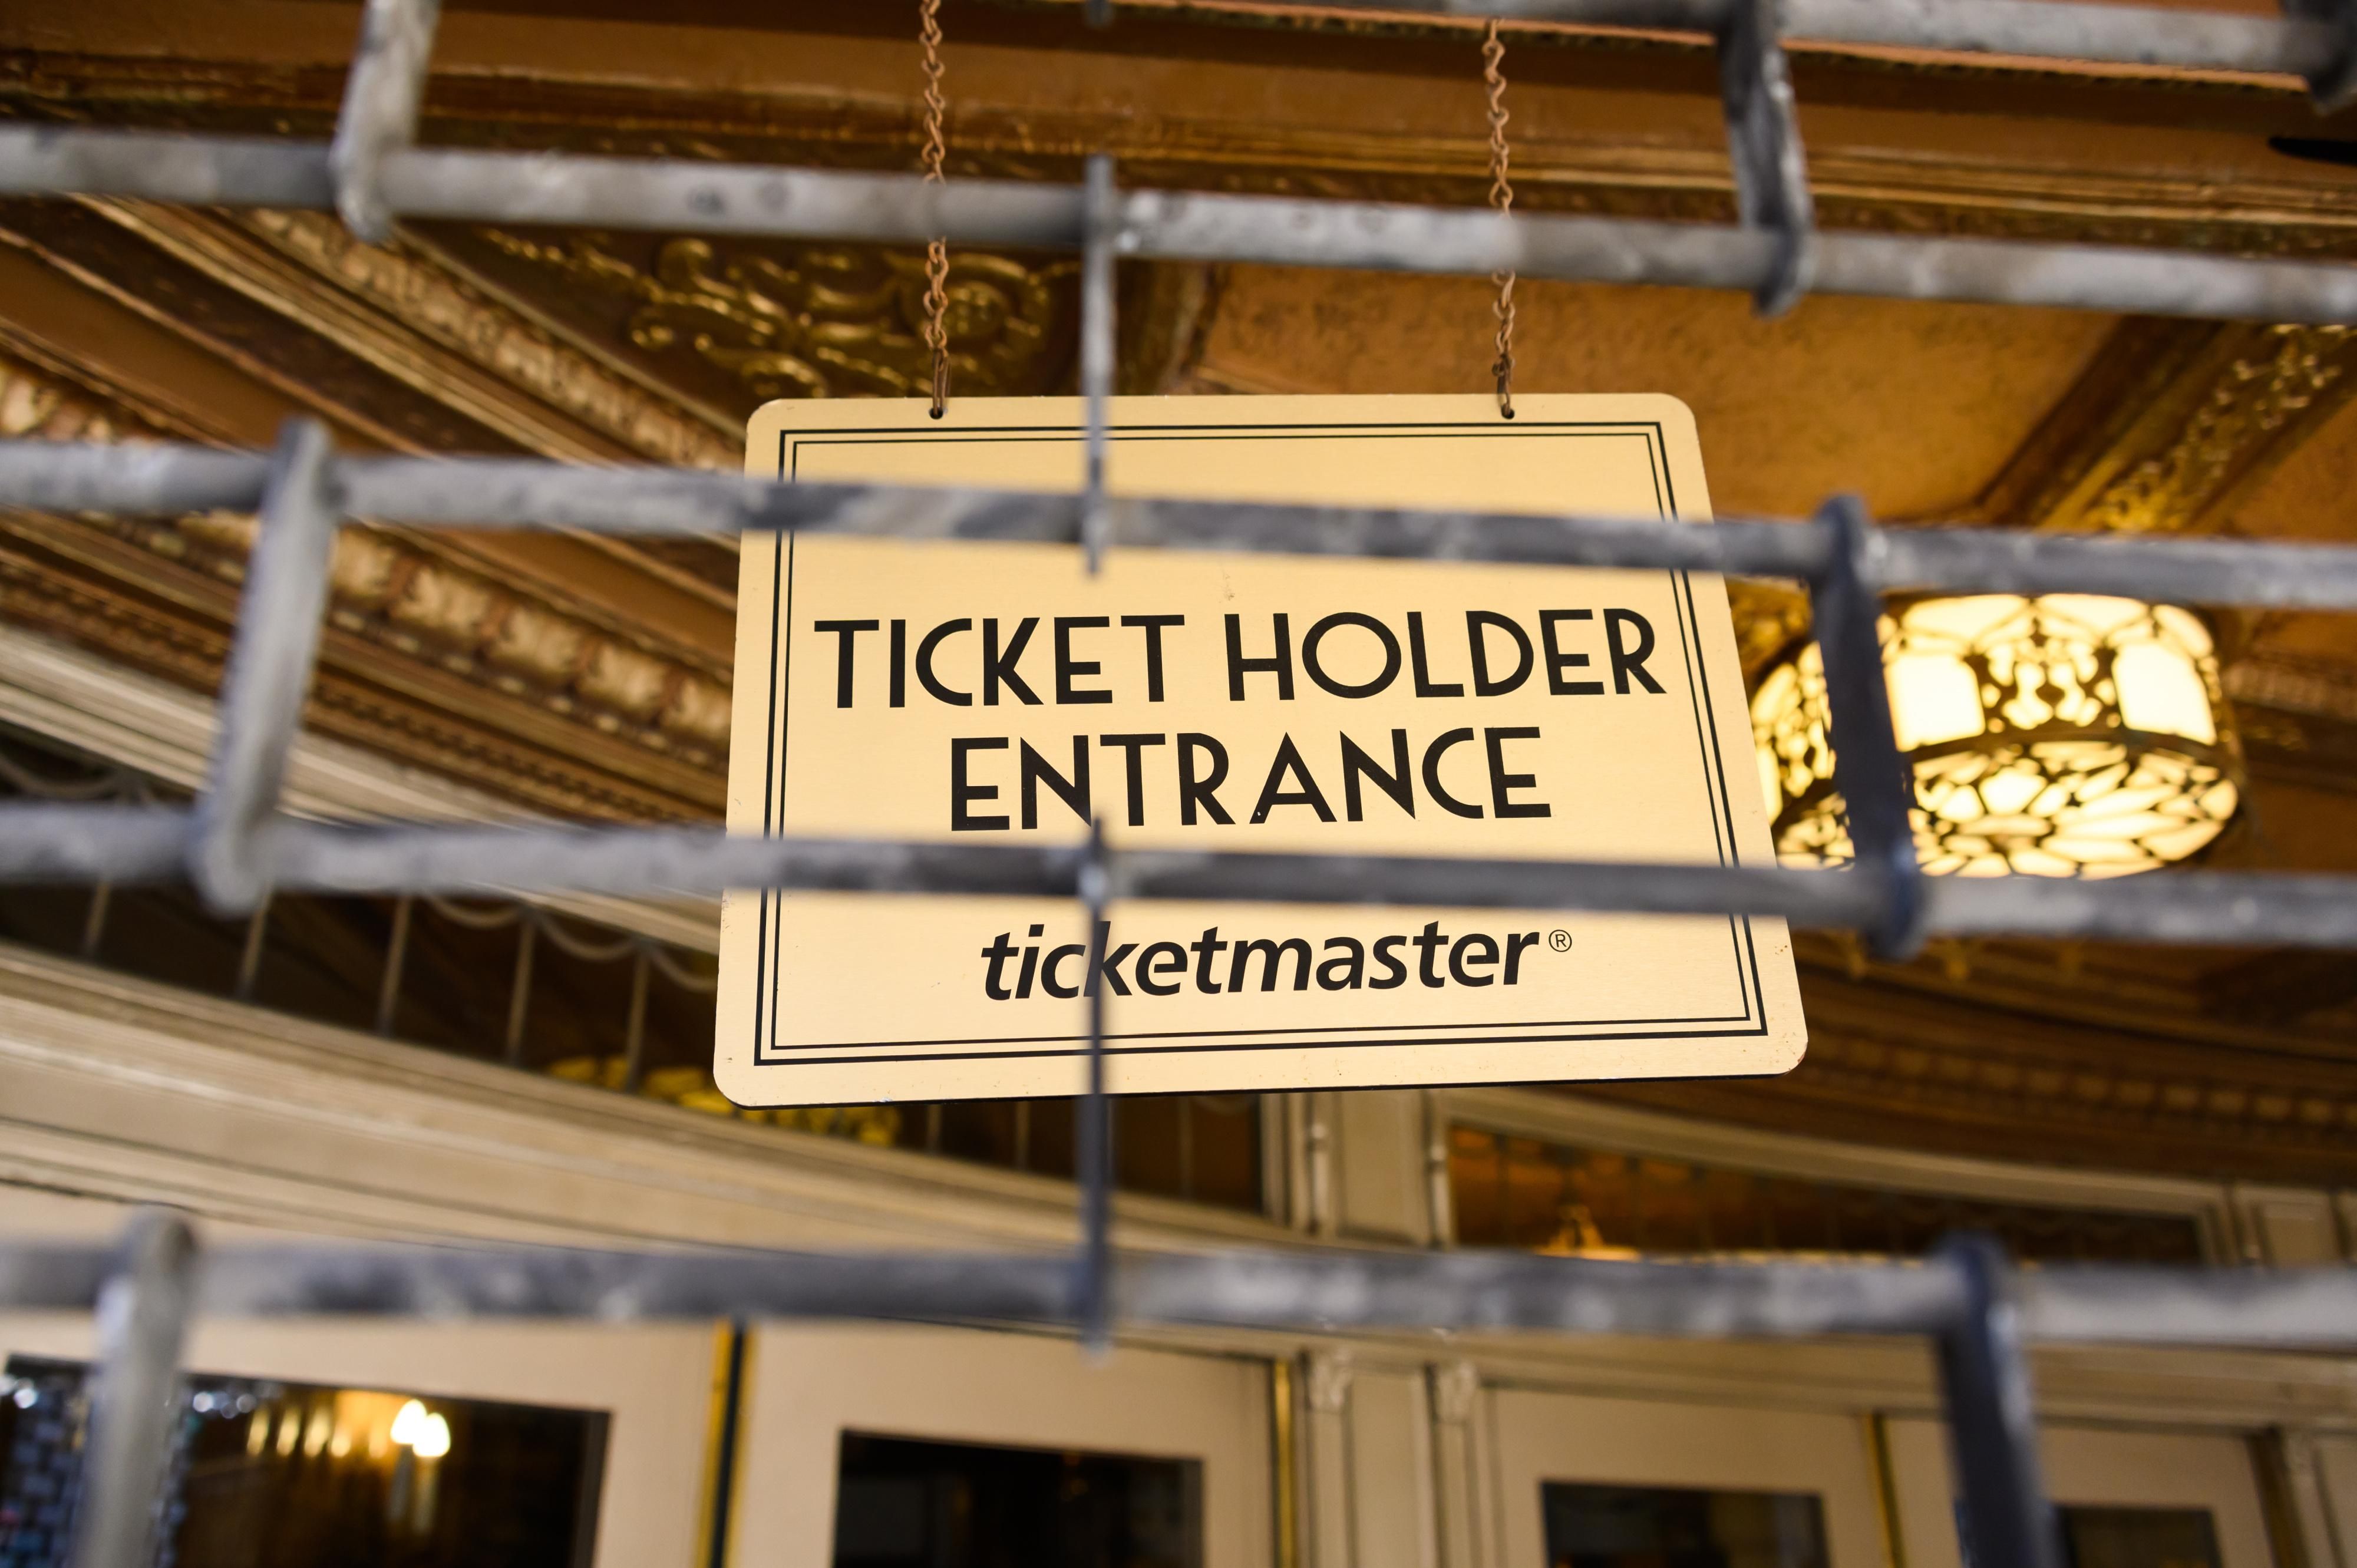 Ticket holder entrance sign